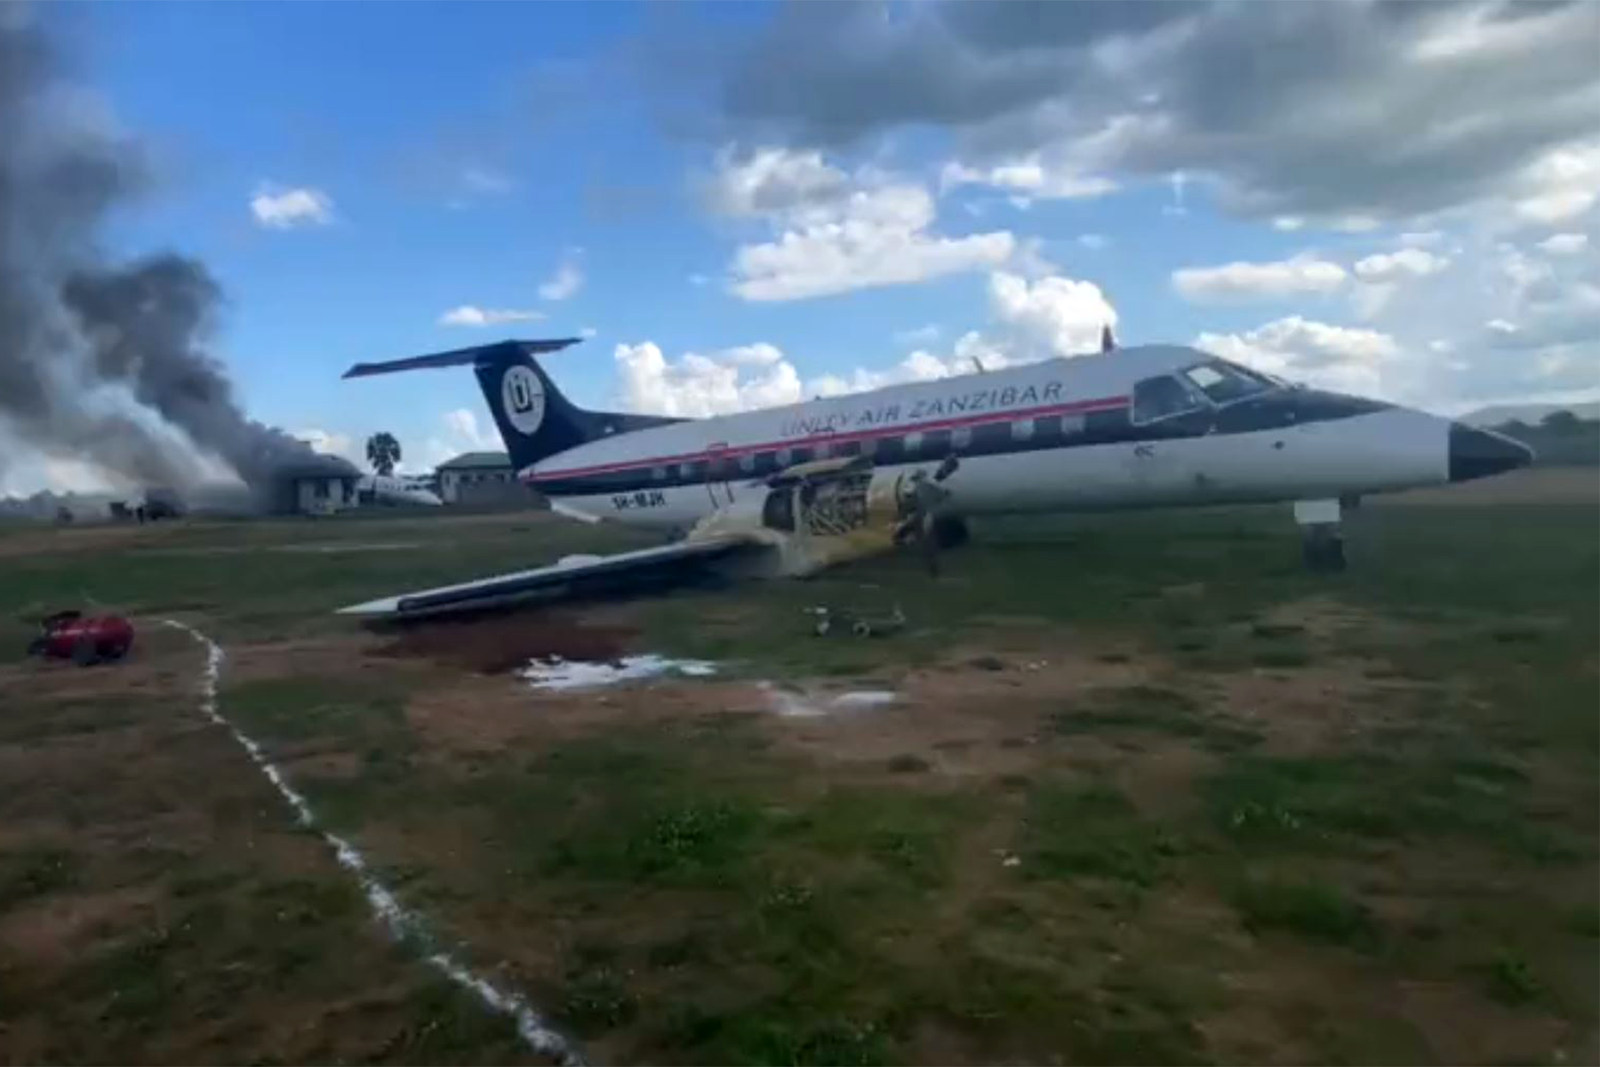 Los dos Embraer EMB120 Brasilia que se han estrellado hoy en Tanzania, en primer lugar el avión de Unity Air Zanzíbar y al fondo el avión de Flightlink